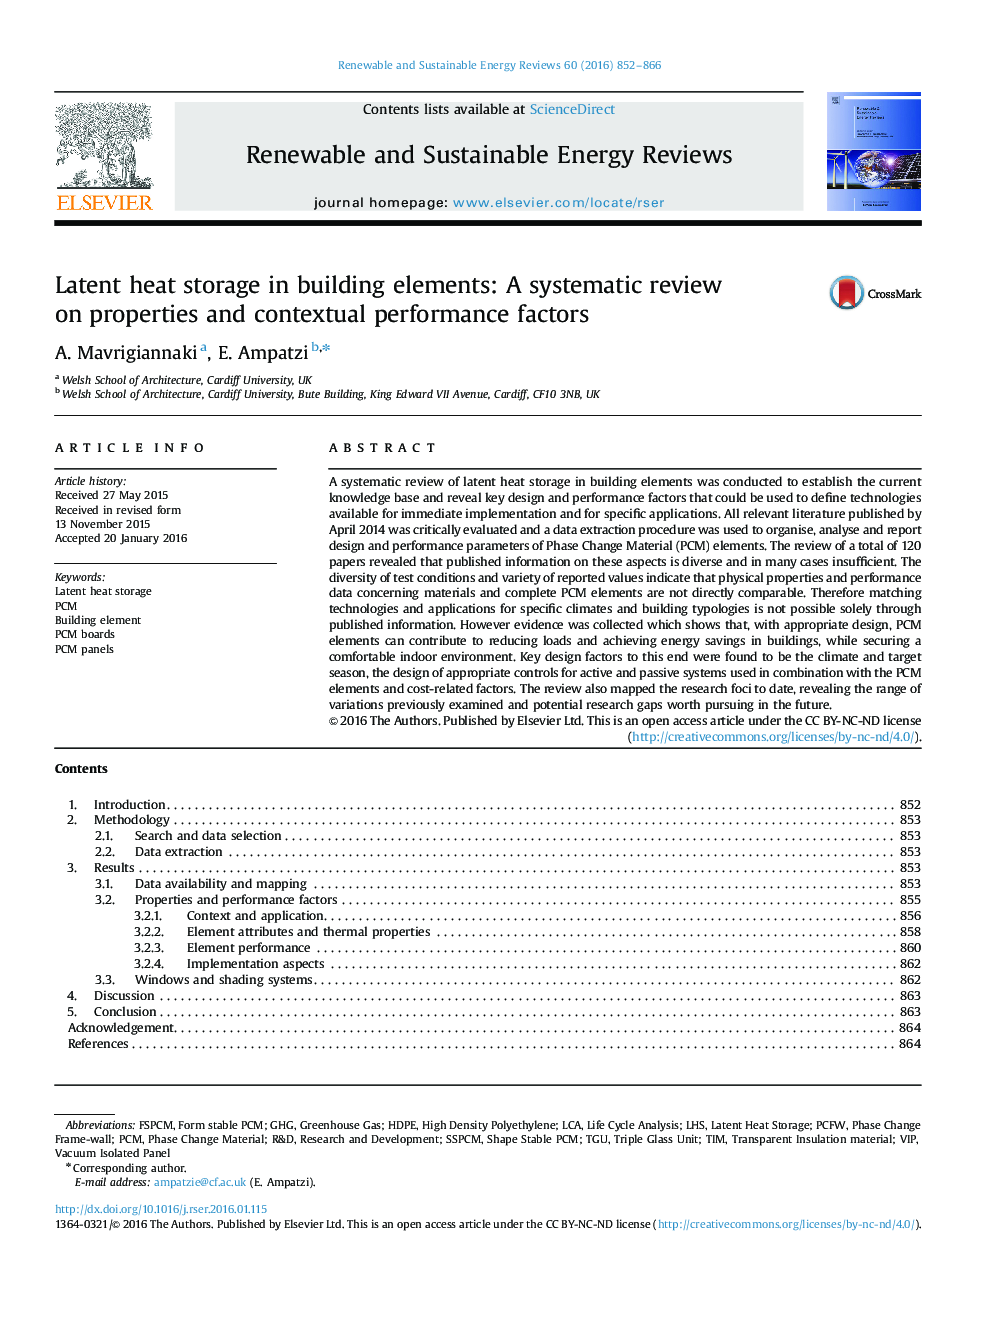 ذخیره سازی گرمای نهان در عناصر ساختاری: بازنگری منظم در مورد خواص و عوامل عملکرد متقابل 